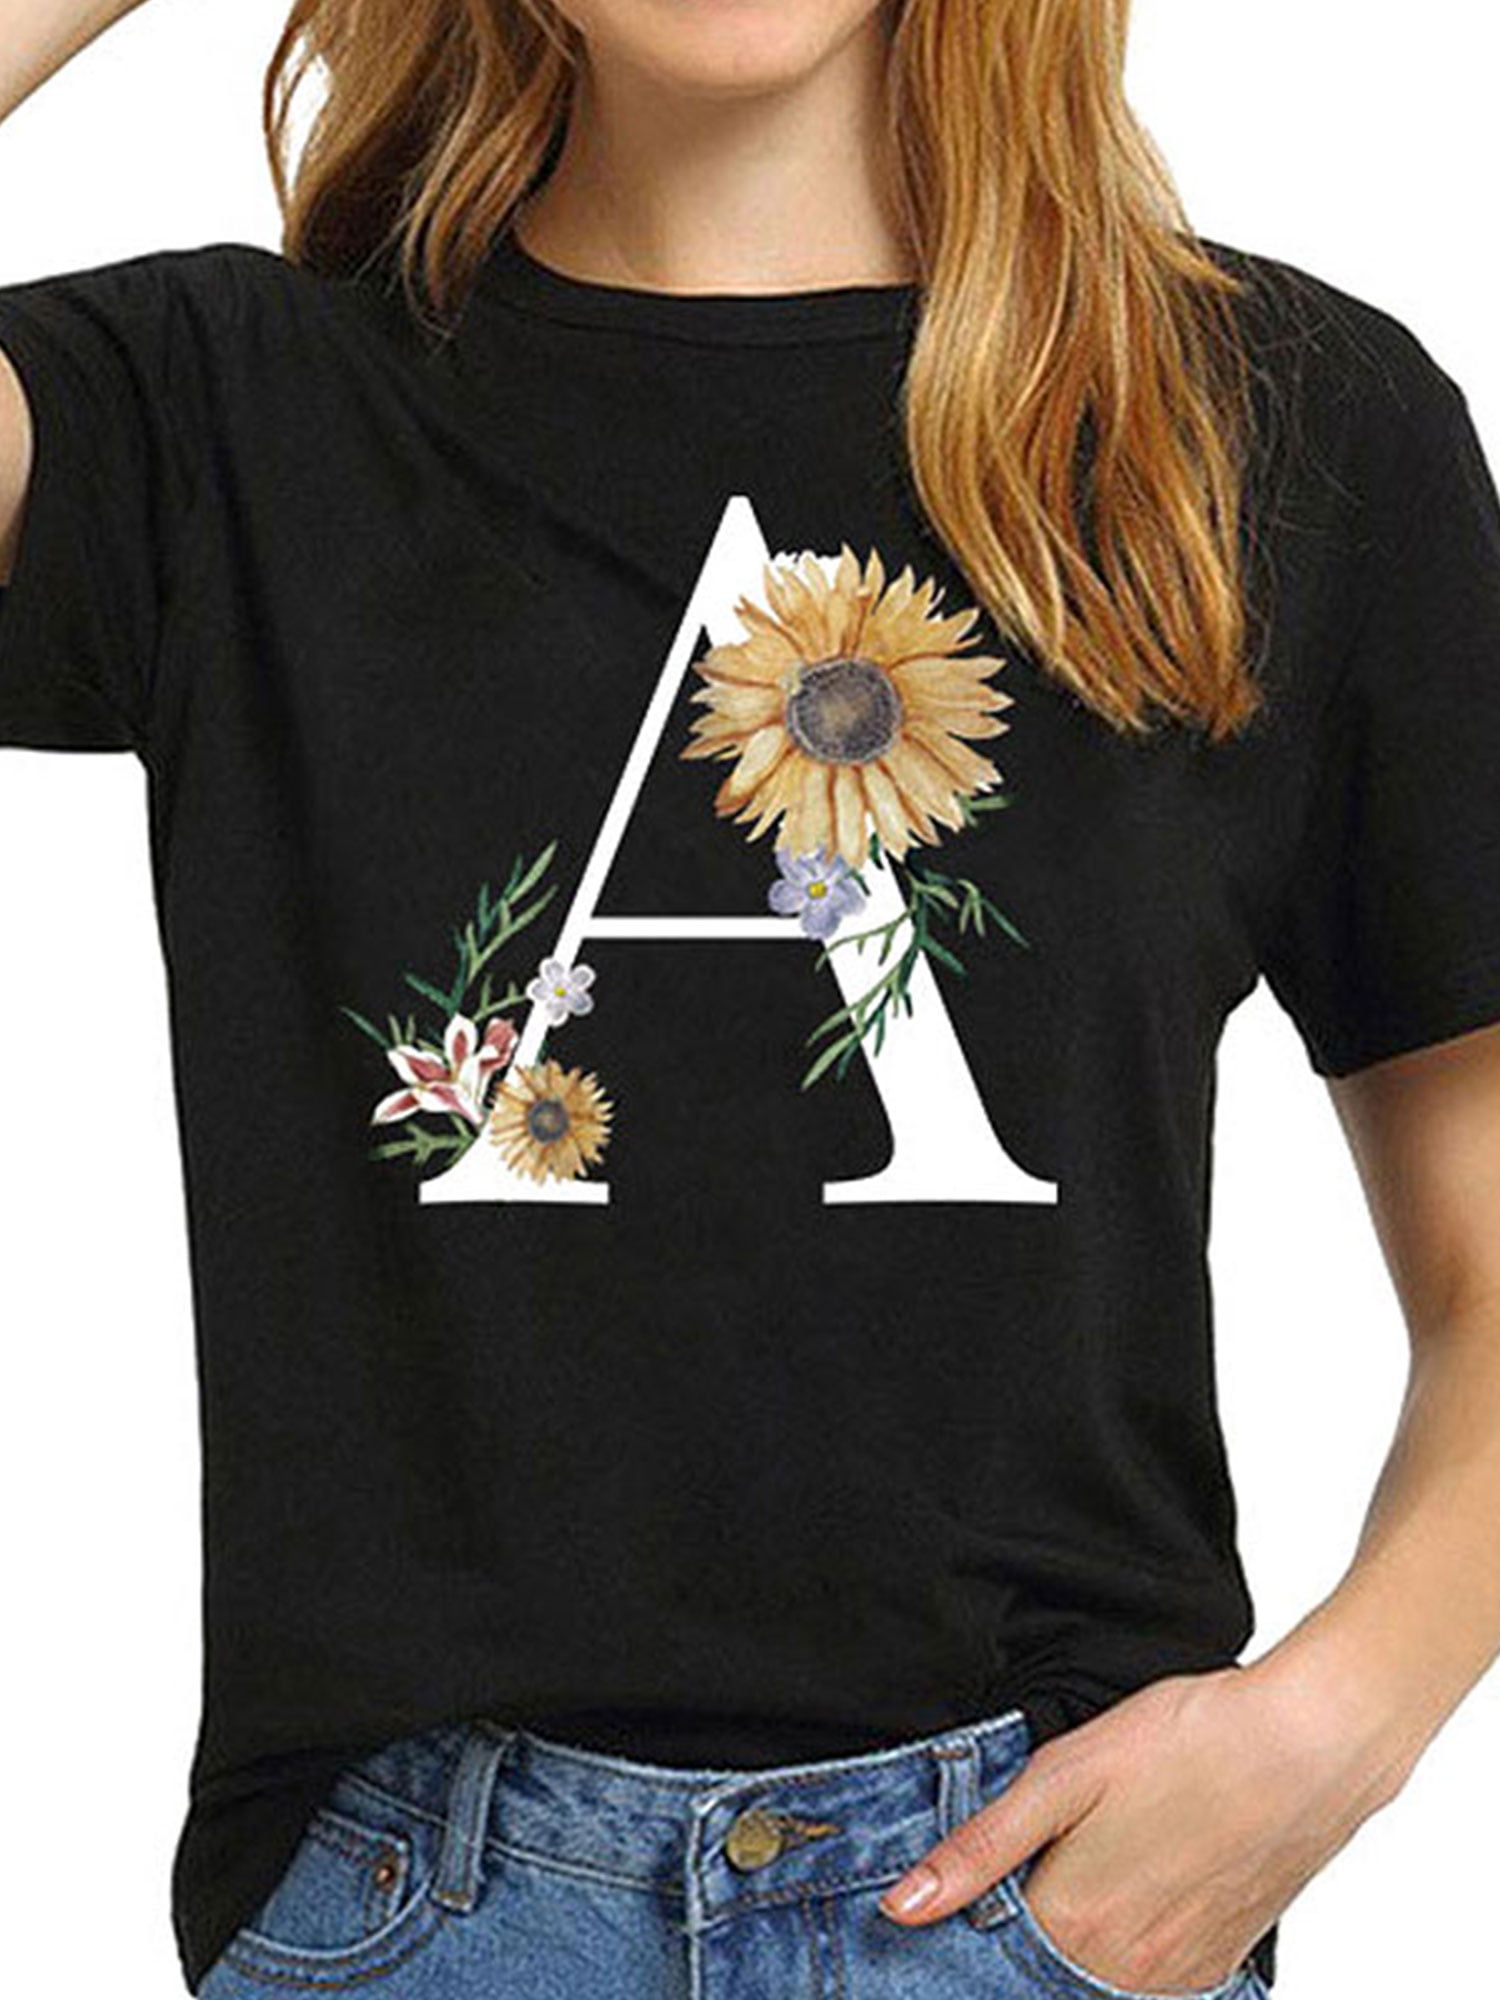 Boho Graphic T-Shirt Wildflower Wreath Oversized Women's T-Shirt